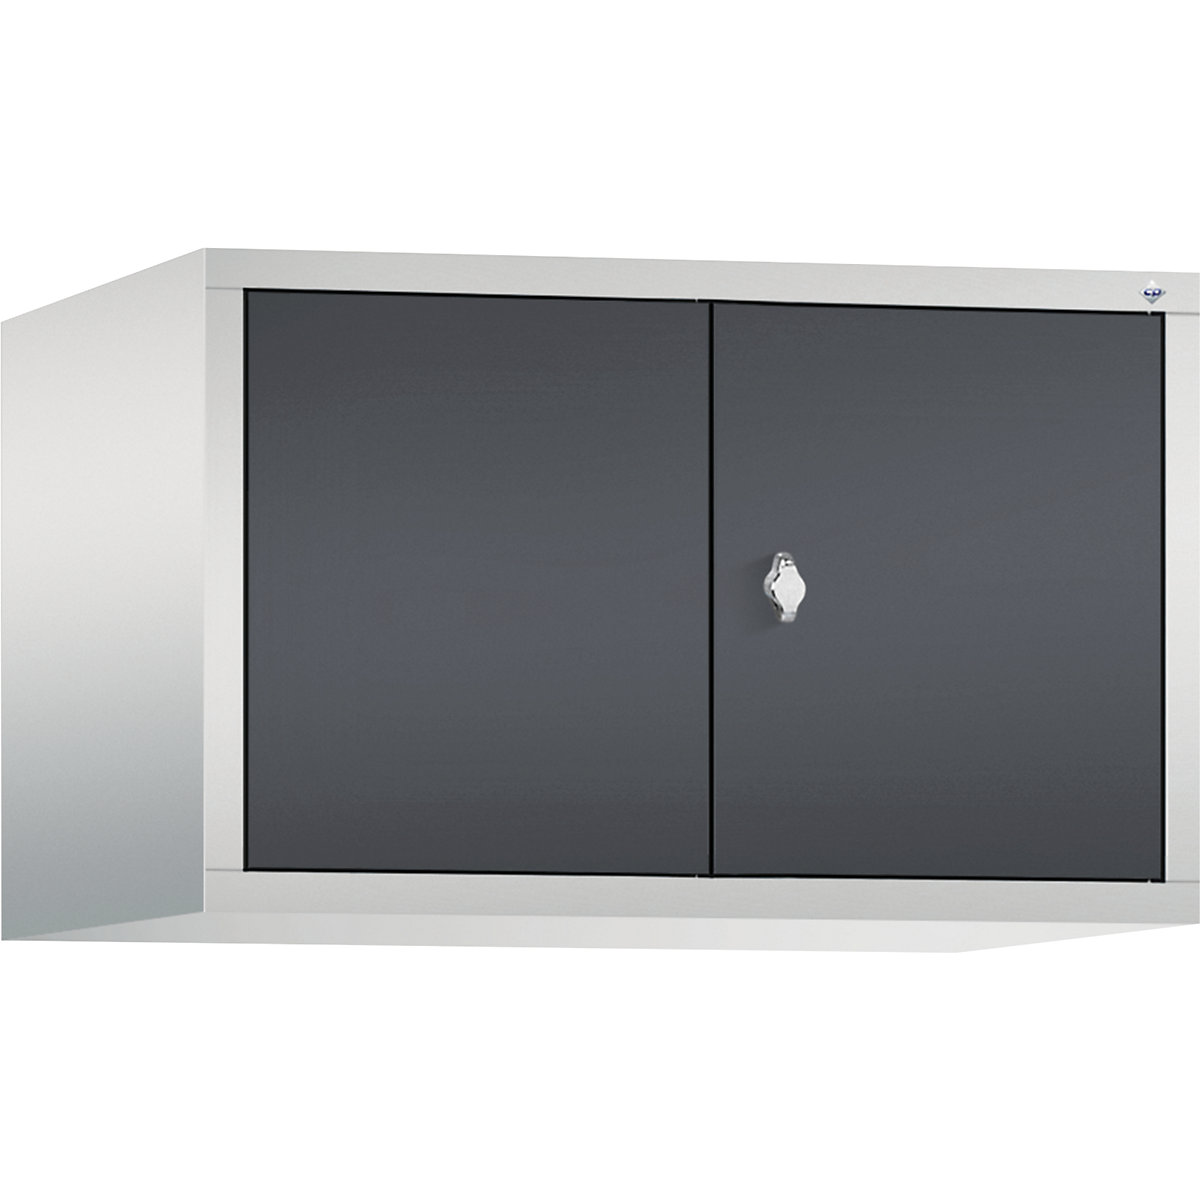 C+P – Altillo CLASSIC, puertas batientes que cierran al ras entre sí, 2 compartimentos, anchura de compartimento 400 mm, gris luminoso / gris negruzco